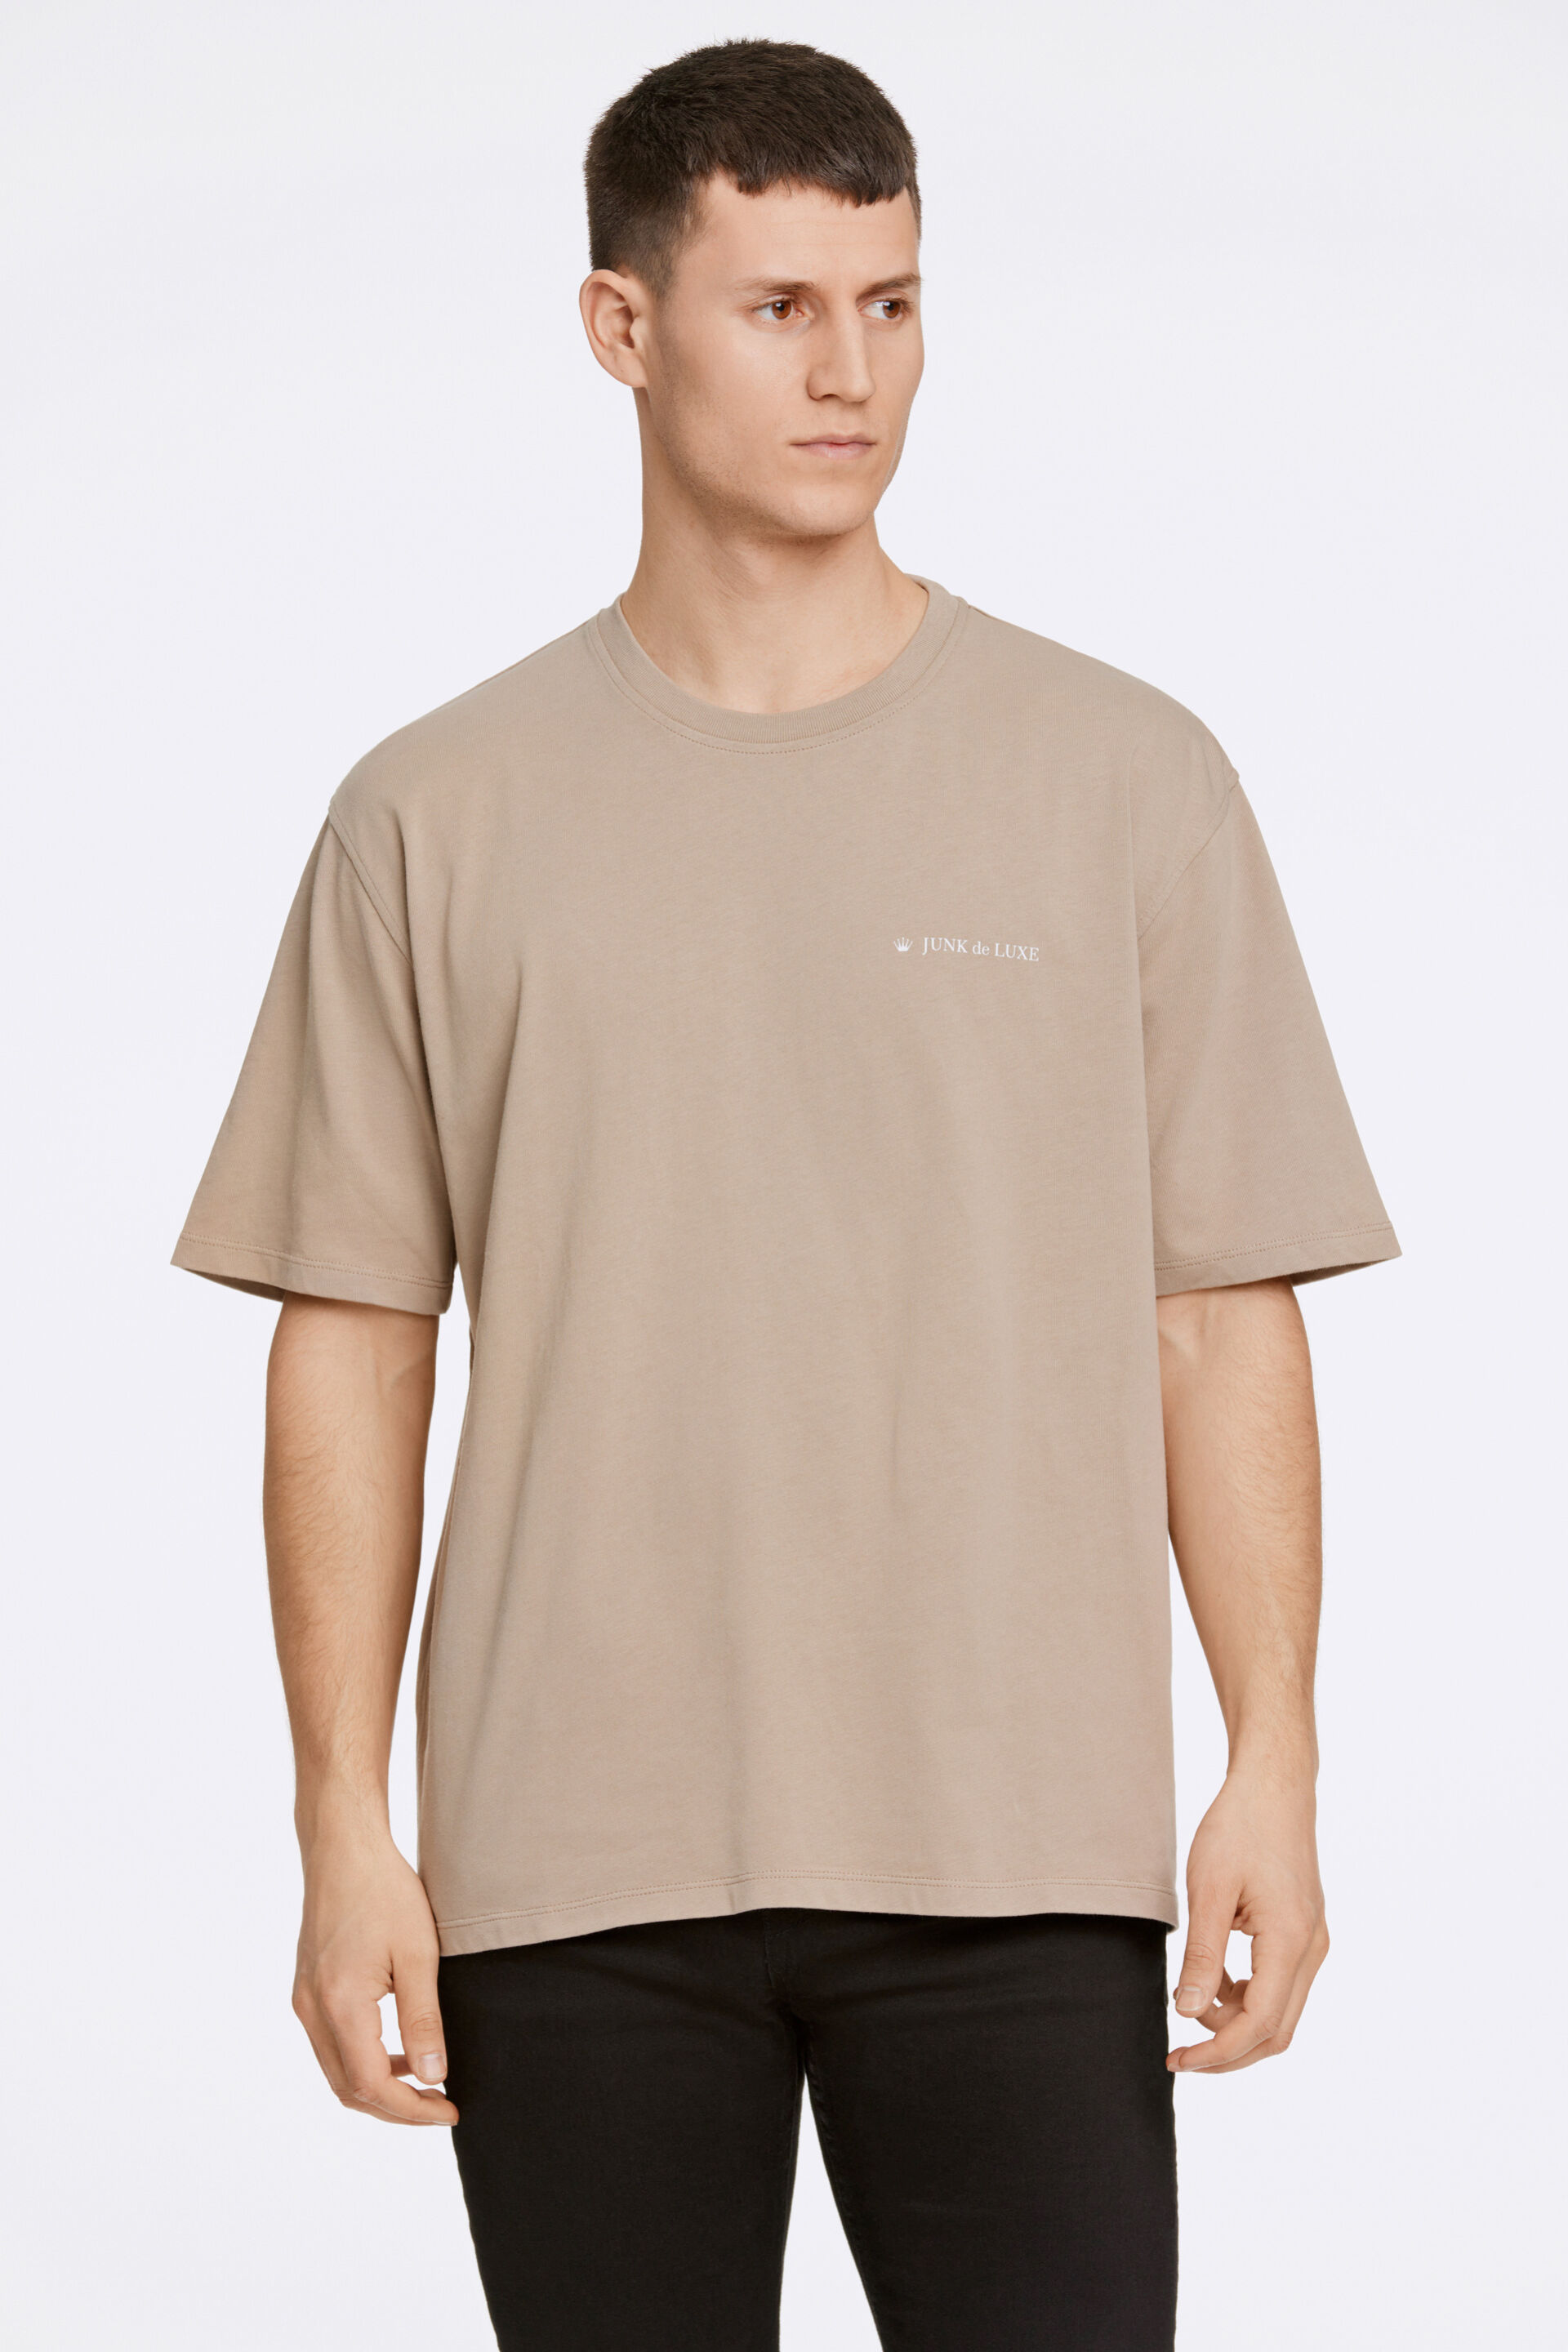 T-shirt T-shirt Sand 60-455019